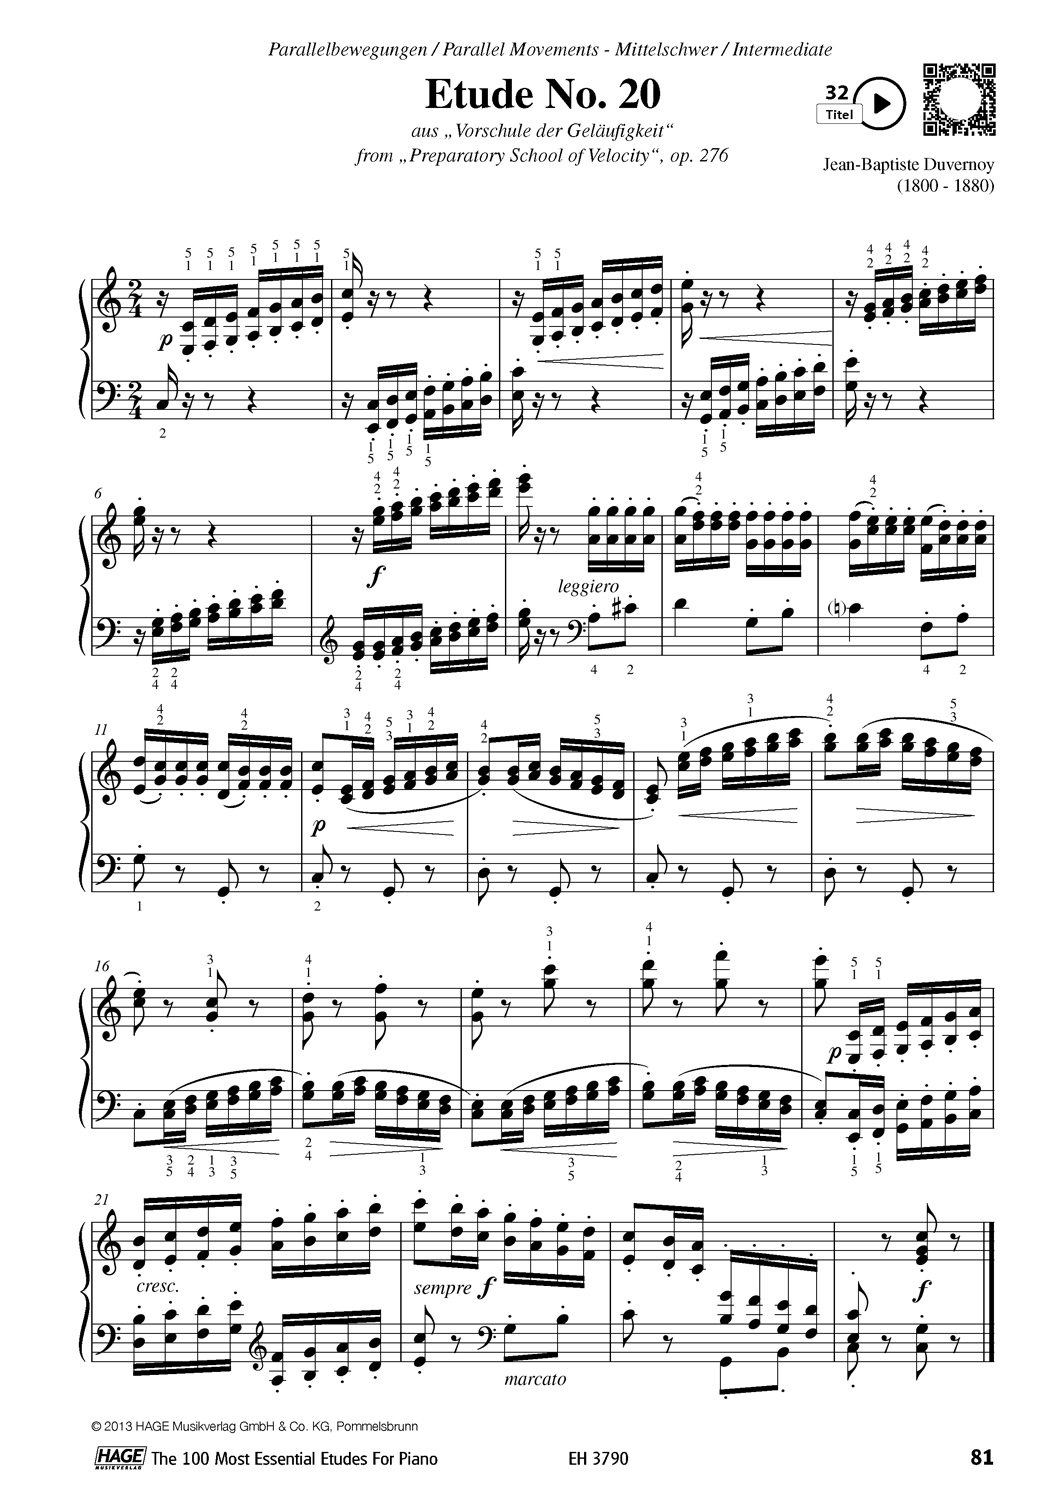 Die 100 wichtigsten Etüden für Klavier Seiten 6